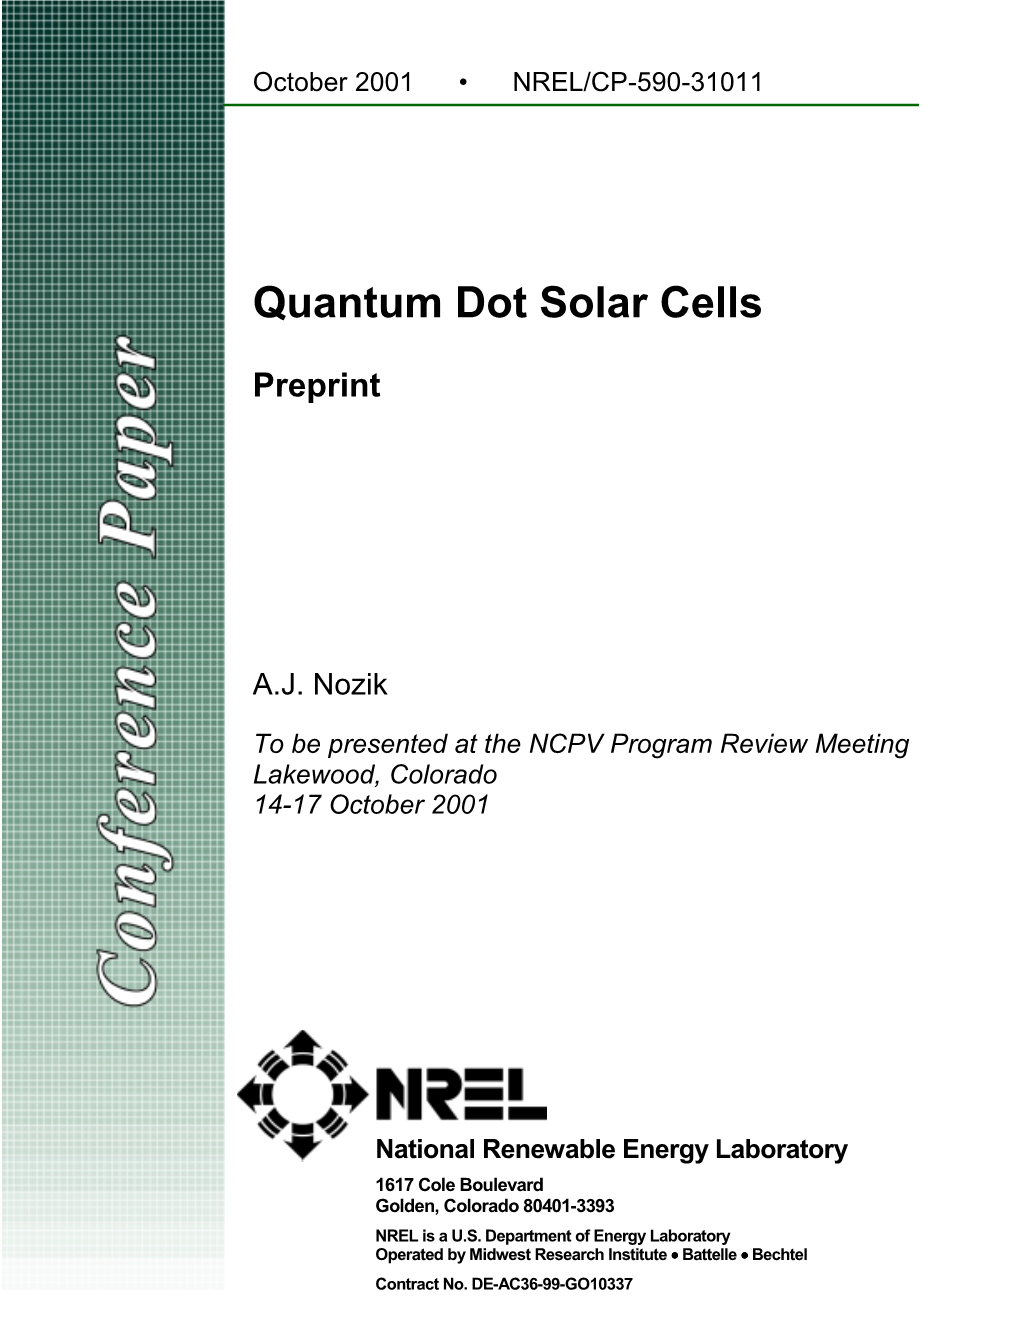 Quantum Dot Solar Cells: Preprint